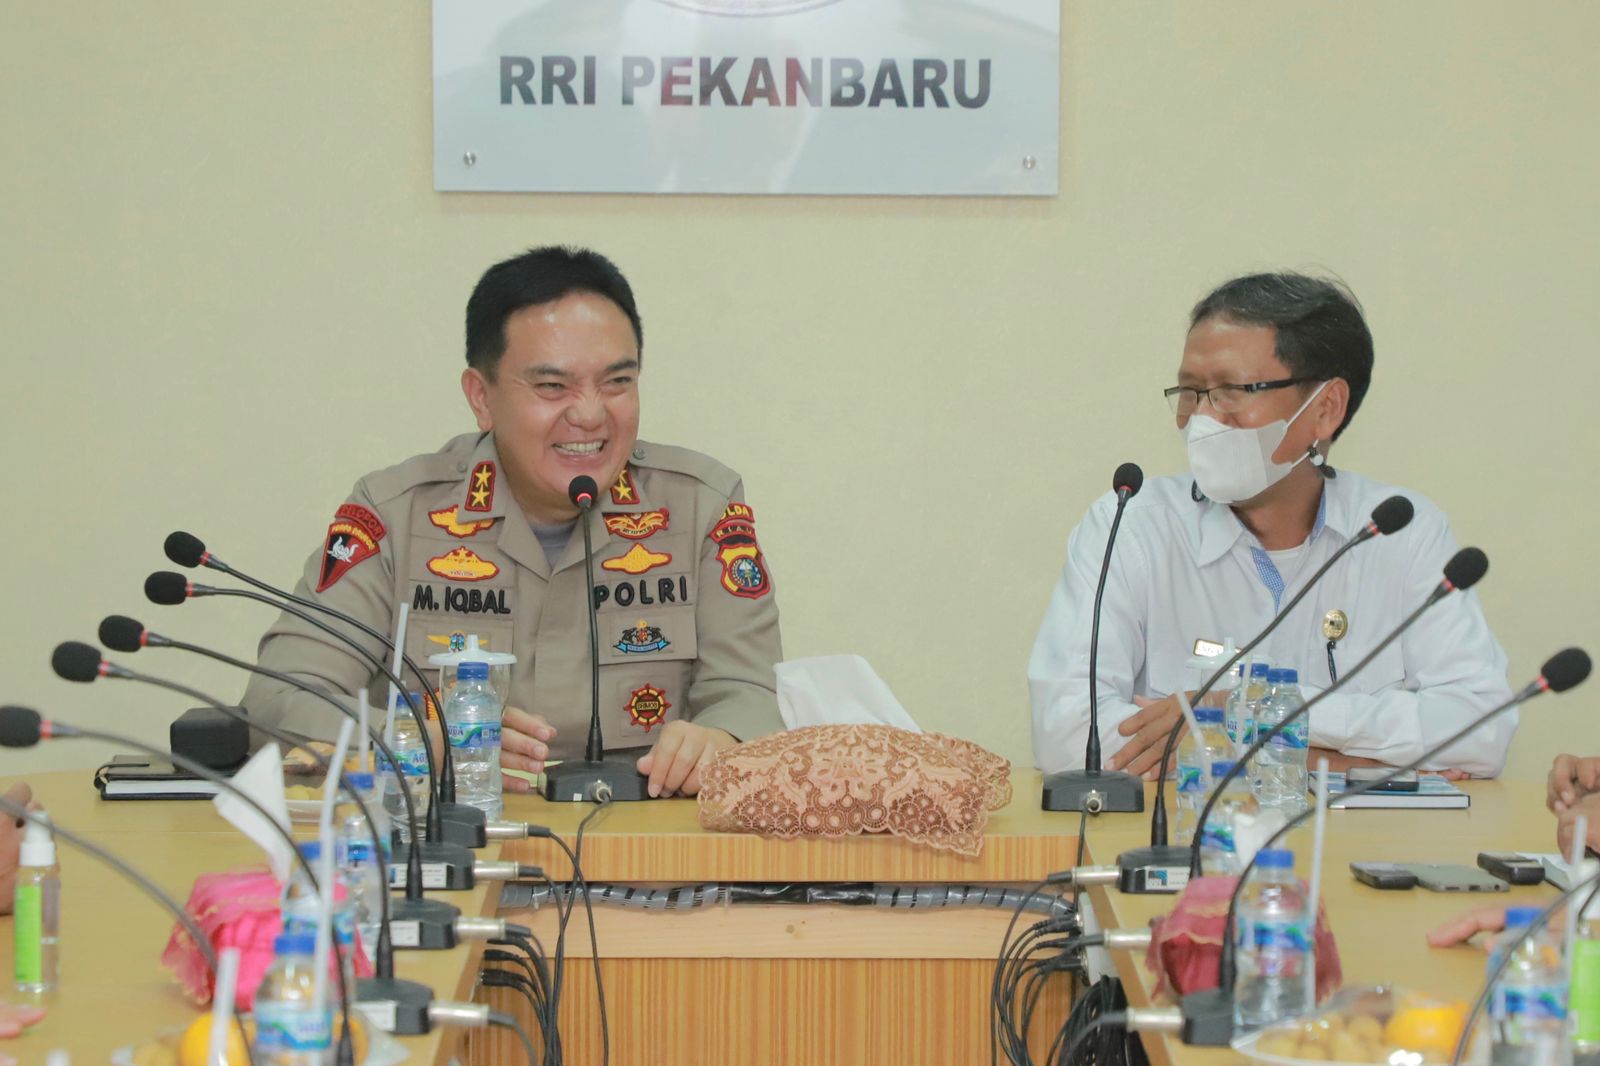 Berkunjung ke RRI Pekanbaru, Kapolda Riau Irjen Iqbal Bernostalgia